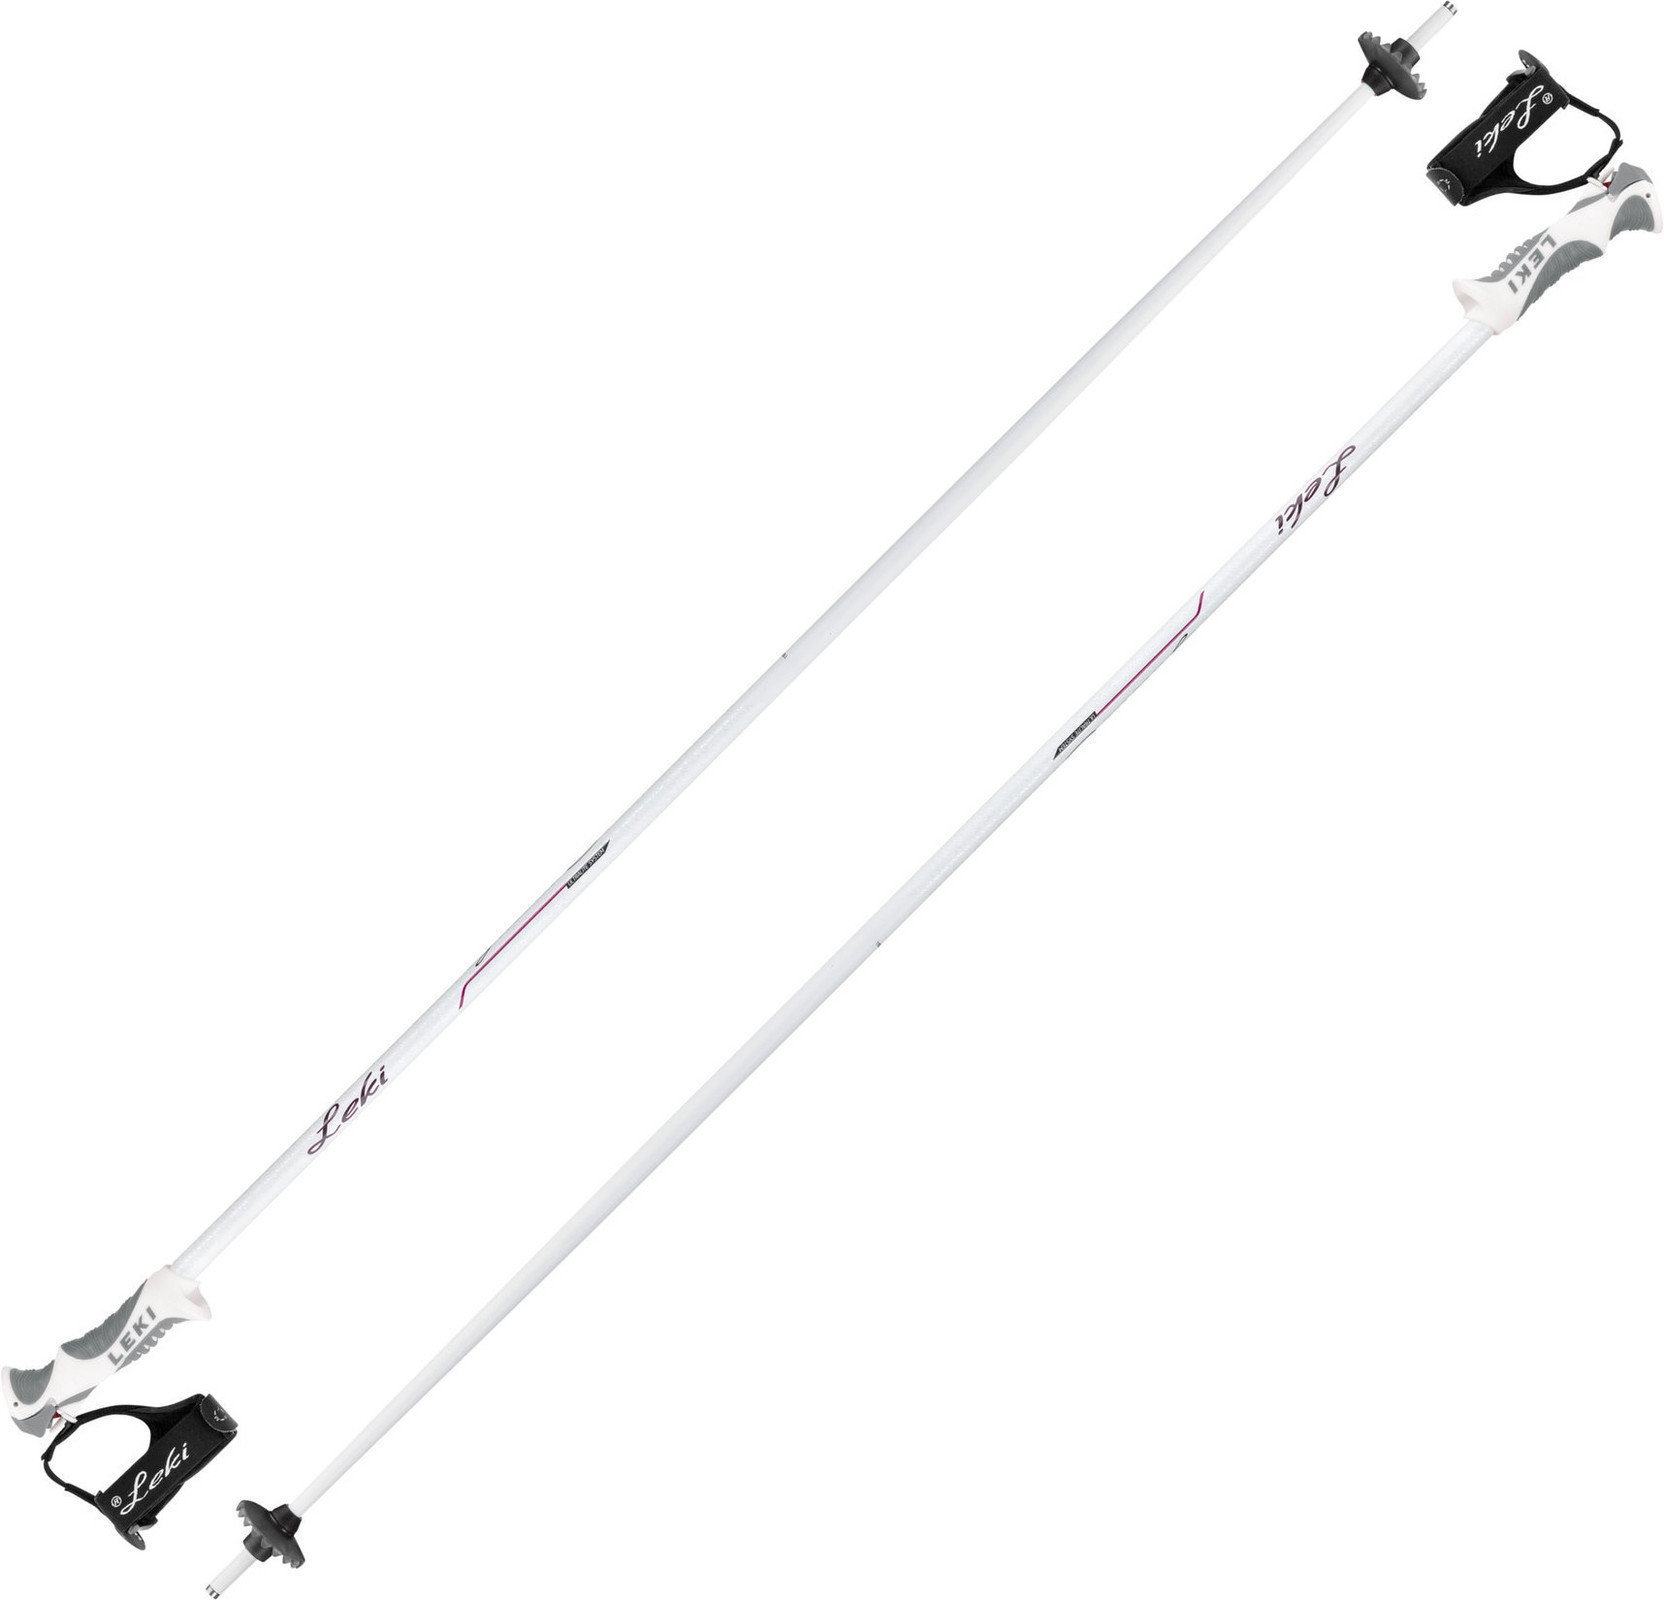 Ski-stokken Leki Giulia S White/Anthracite/Berry 120 cm Ski-stokken